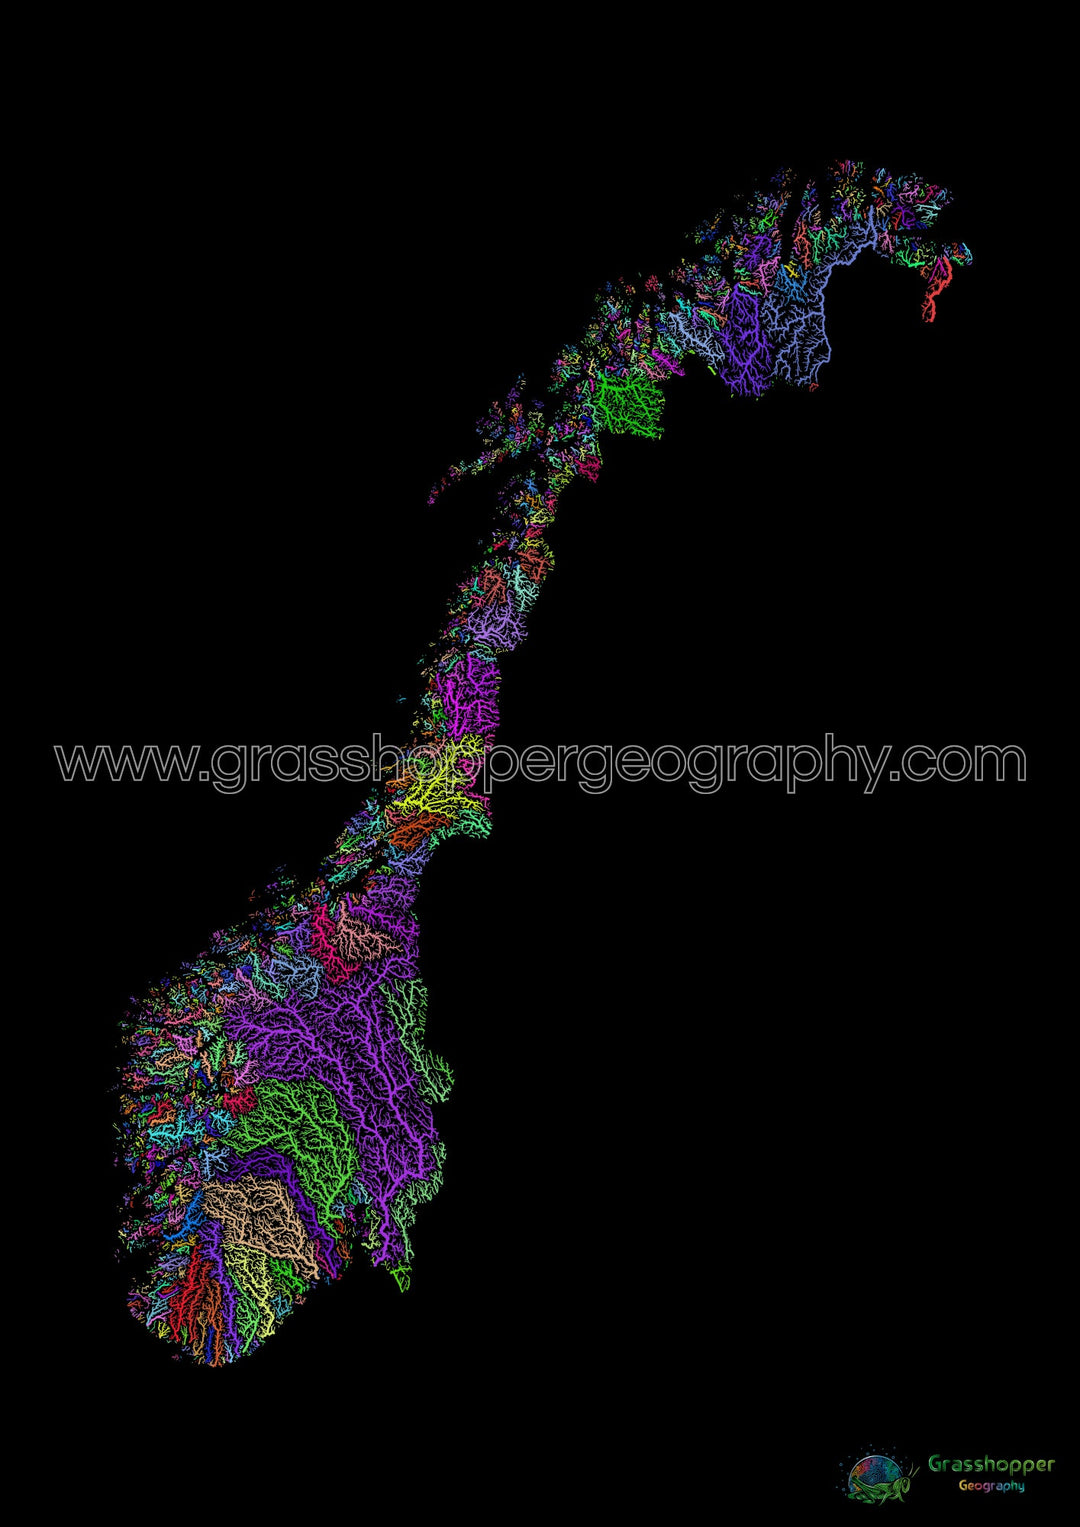 Noruega - Mapa de la cuenca fluvial, arco iris sobre negro - Impresión de Bellas Artes